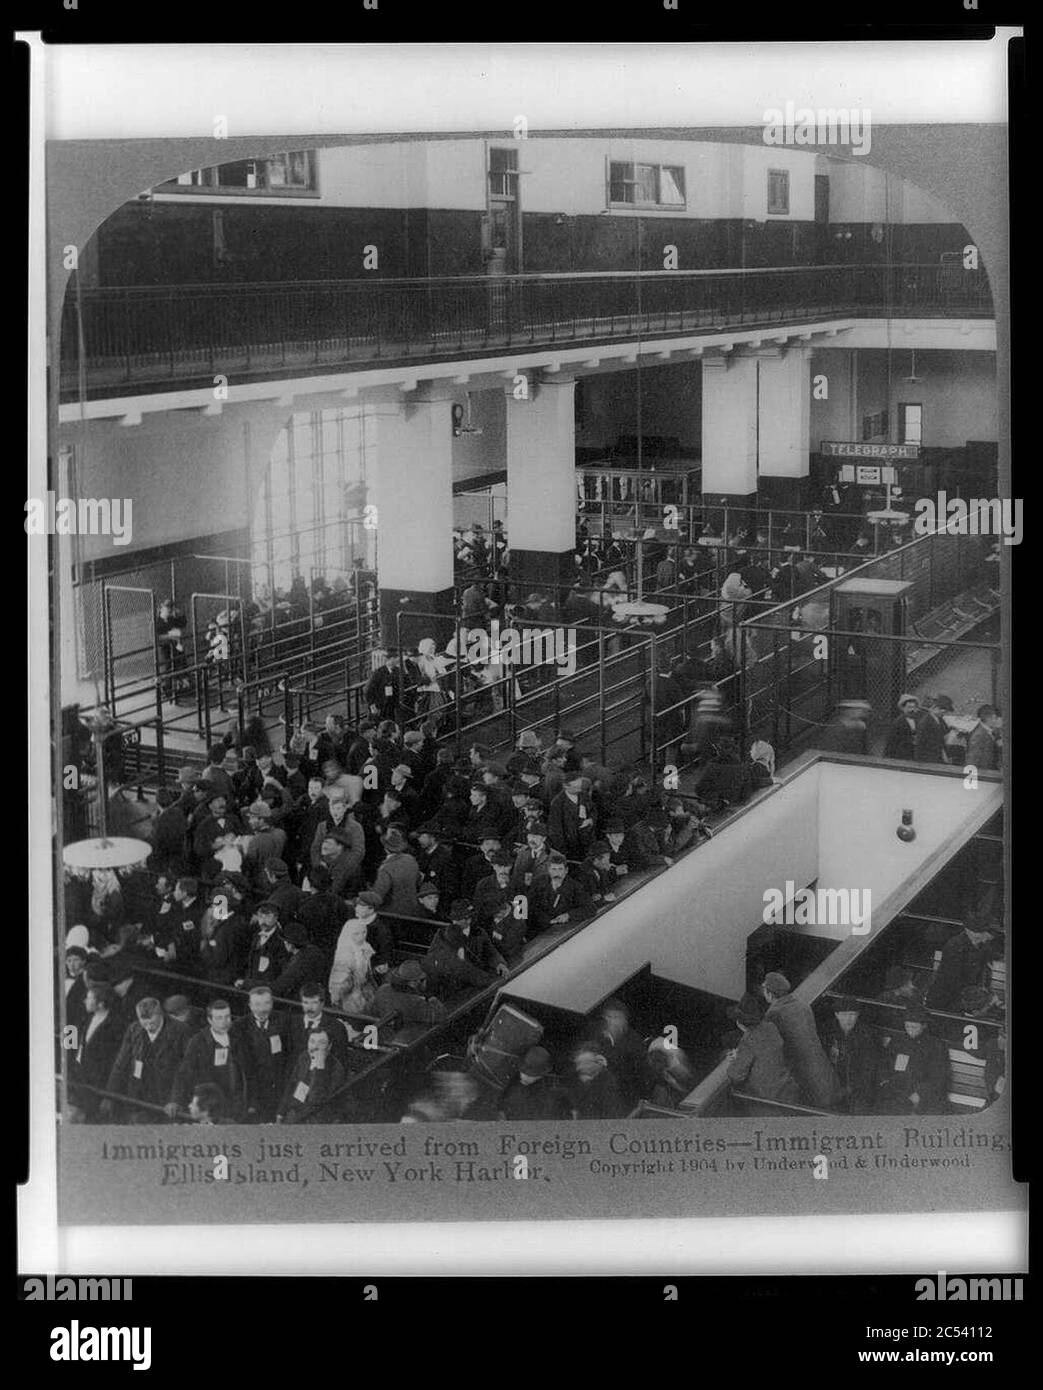 Les immigrants viennent tout juste de pays étrangers - immeuble immigrant, Ellis Island, port de New York Banque D'Images